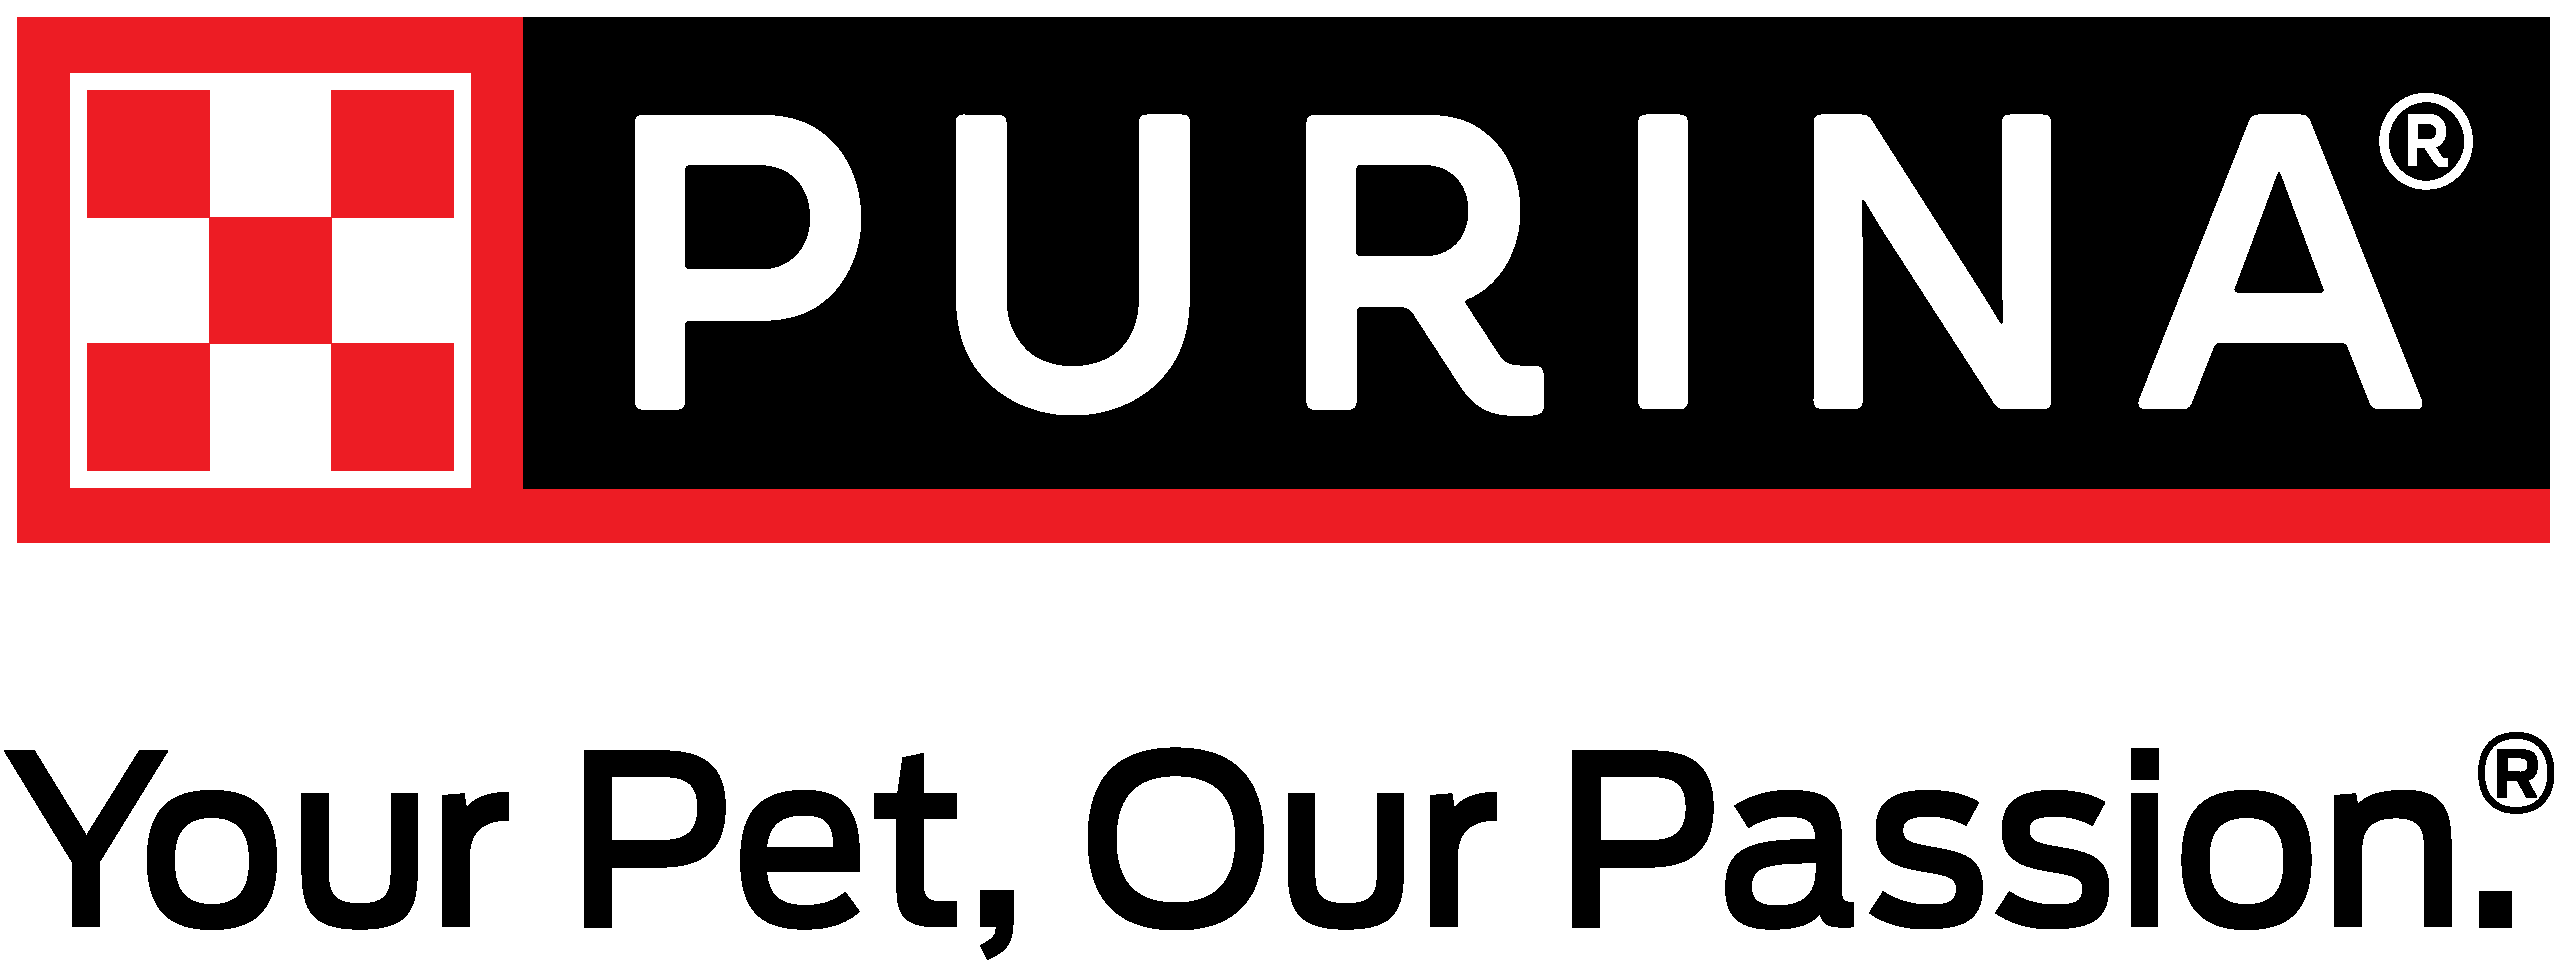 Purina Brand